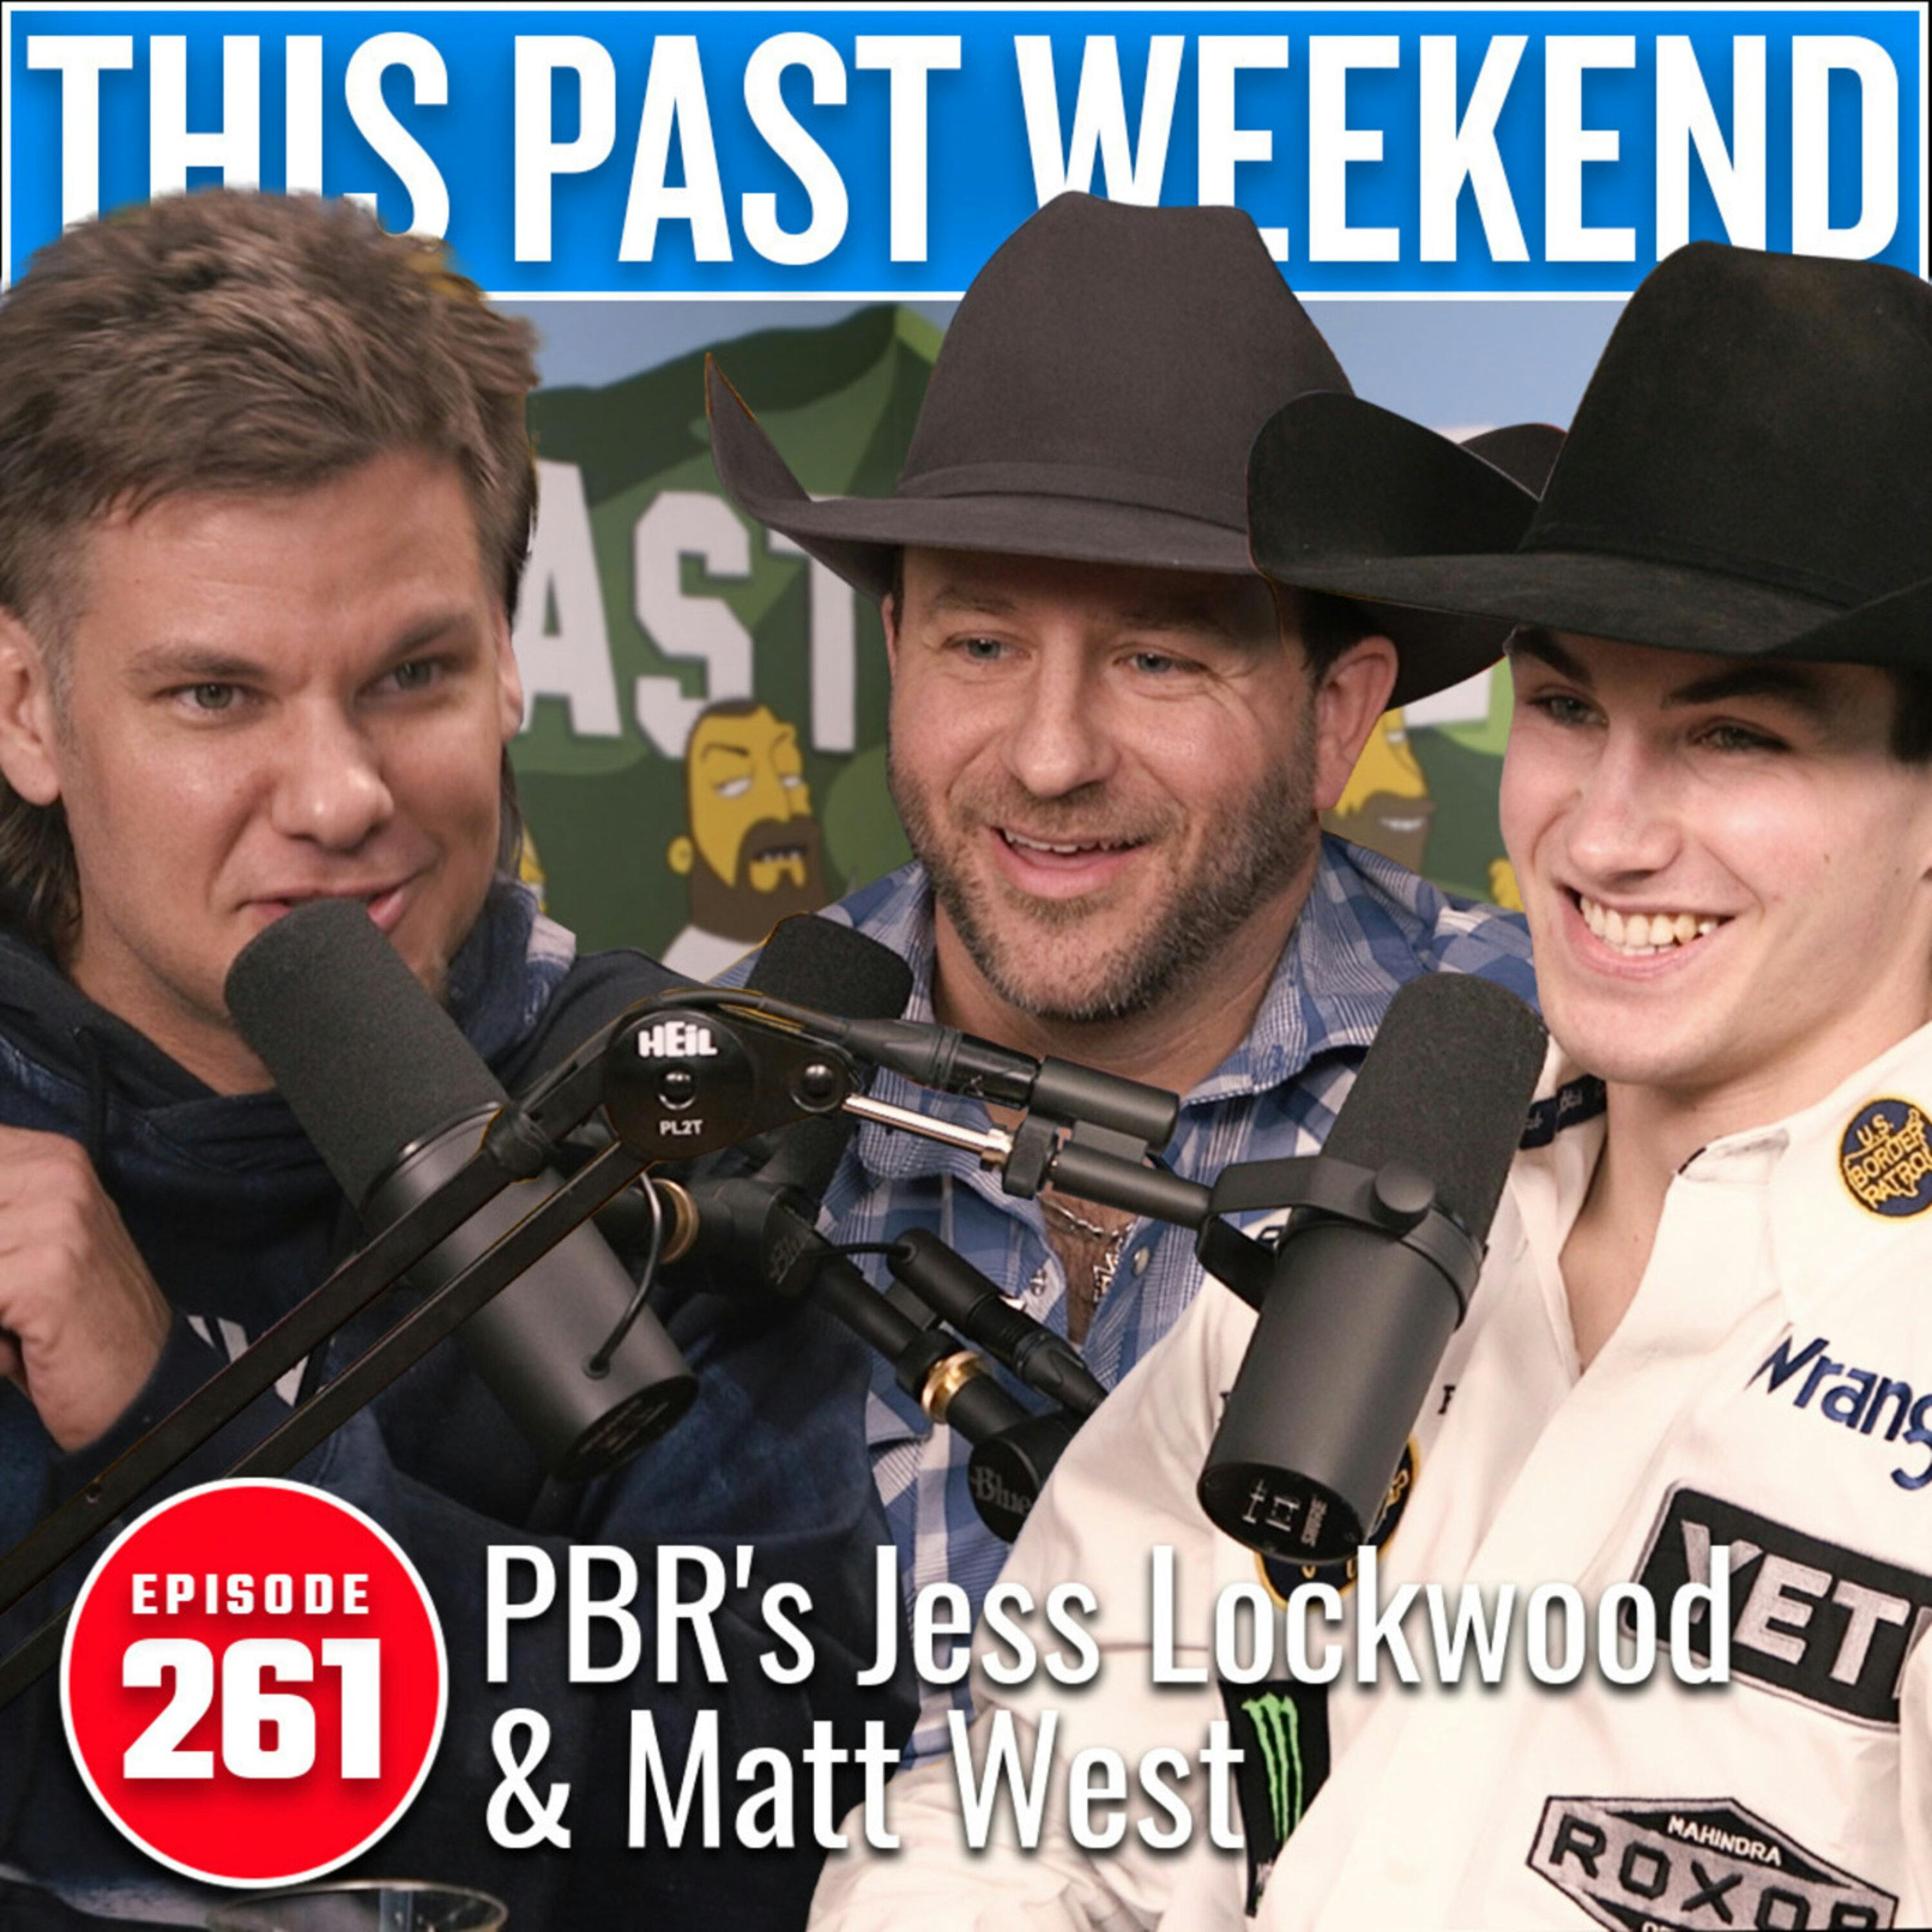 PBR's Jess Lockwood & Matt West | This Past Weekend #261 by Theo Von